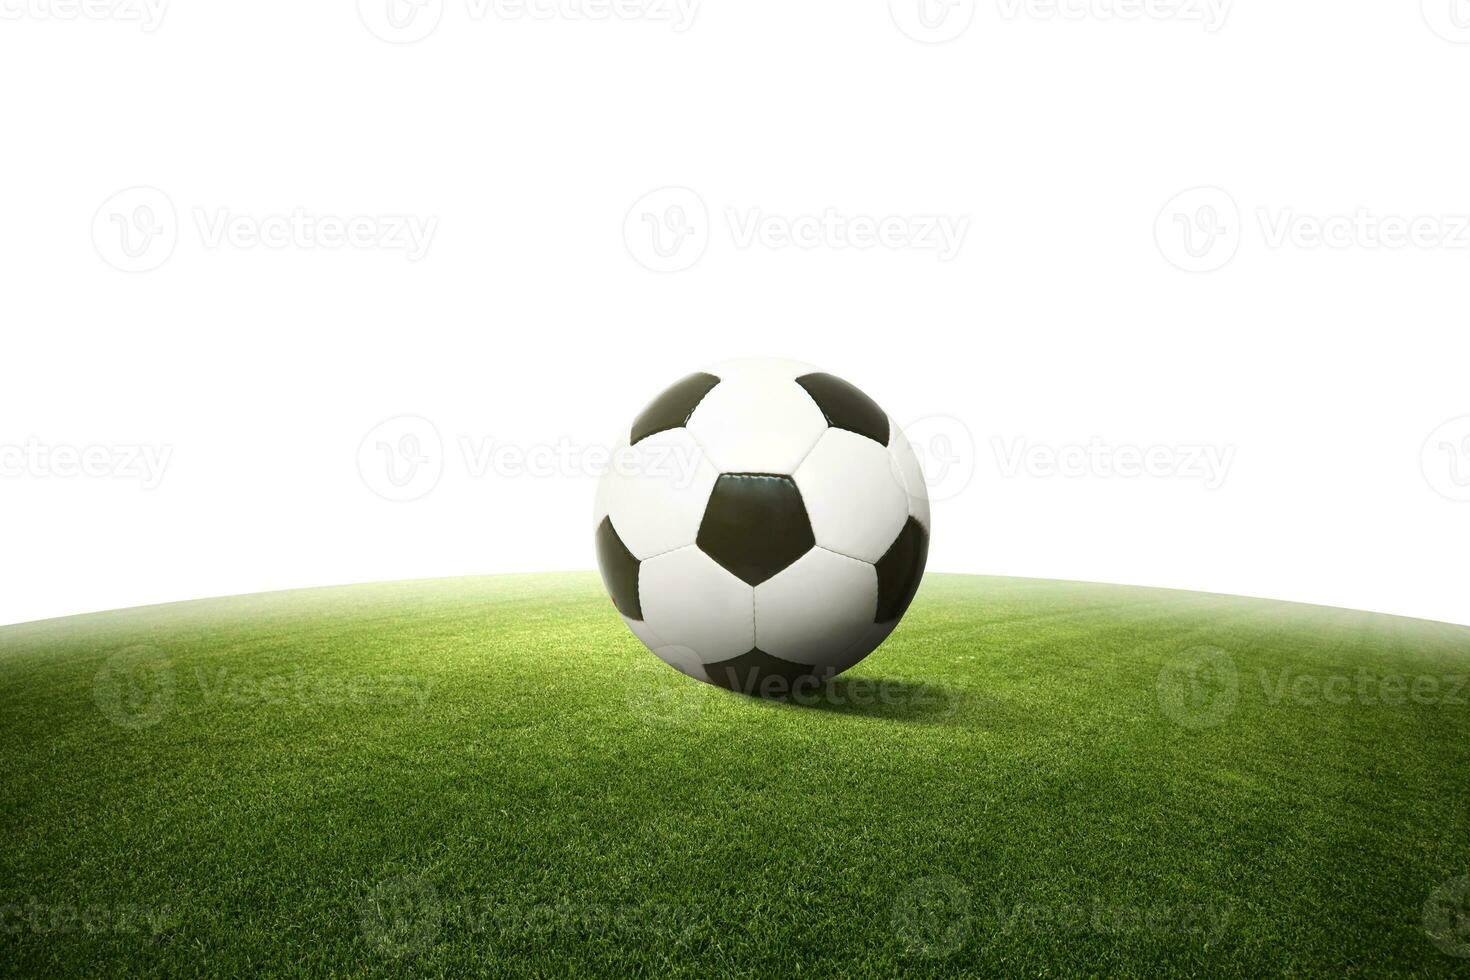 ballon de soccer sur terrain de jeu vert. notion de football photo